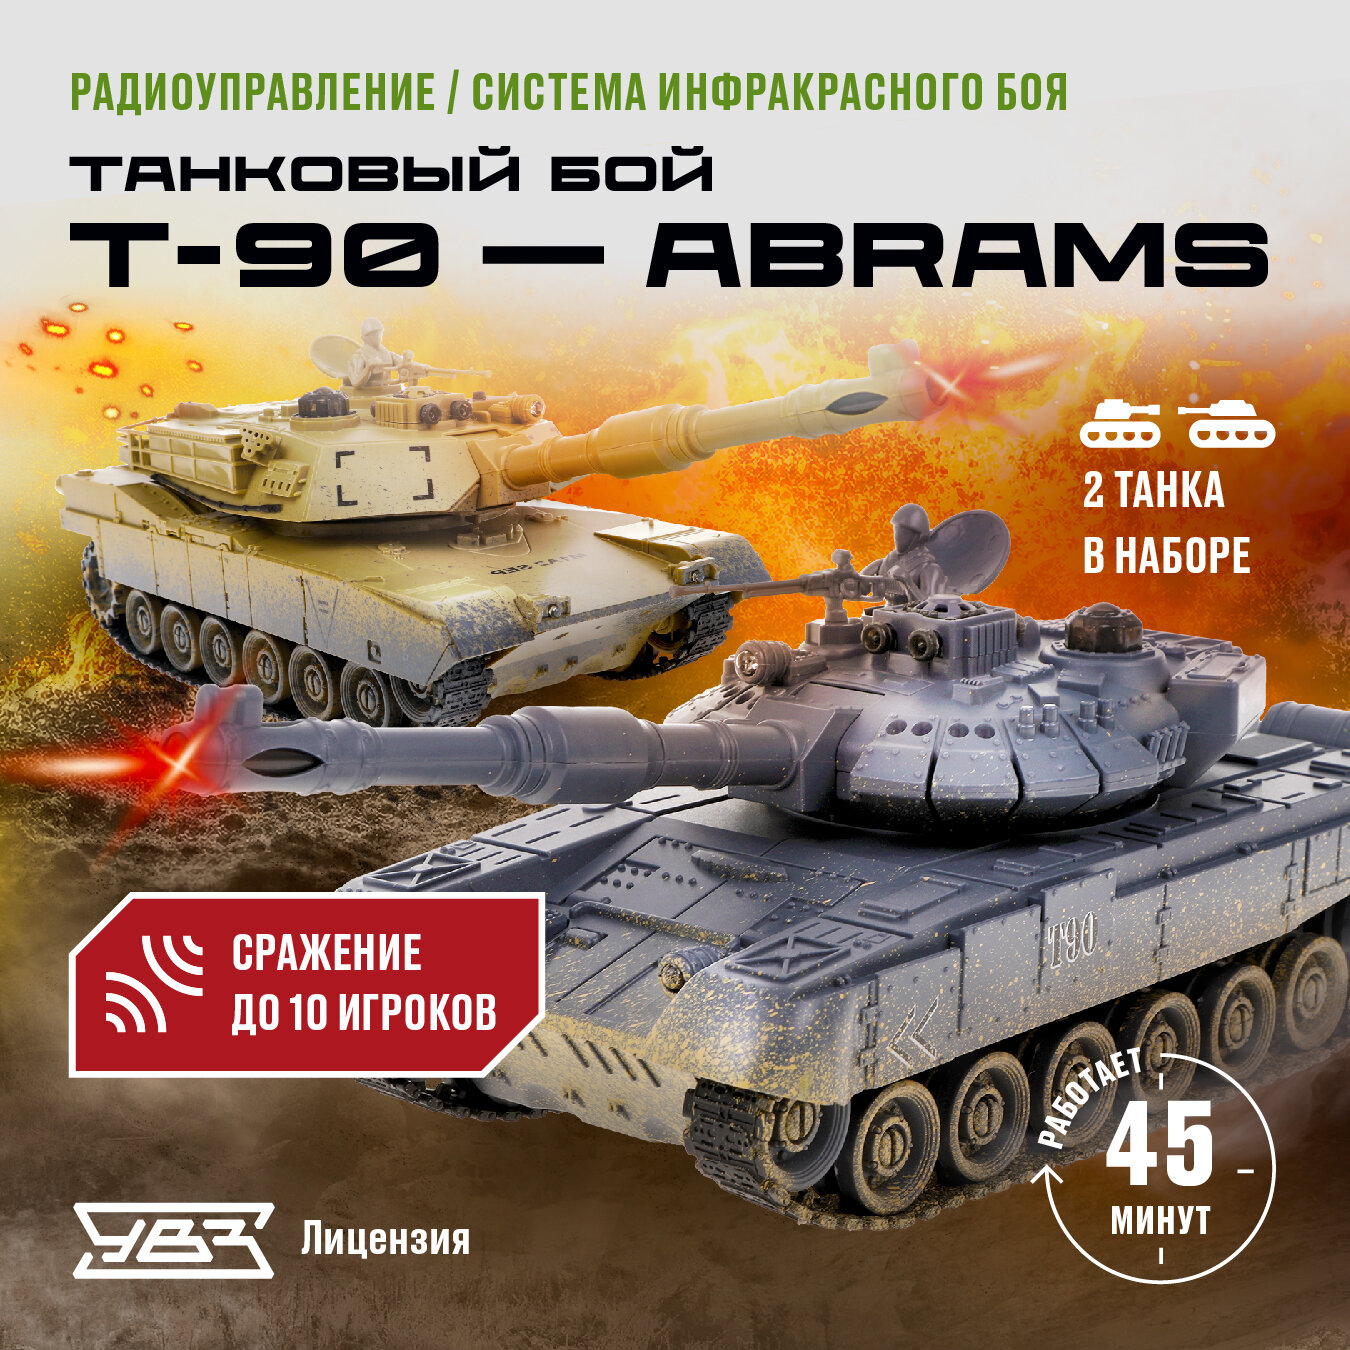 Танковый бой на радиоуправлении 1:24 Т-90 (Россия) - Abrams M1A2 (США)